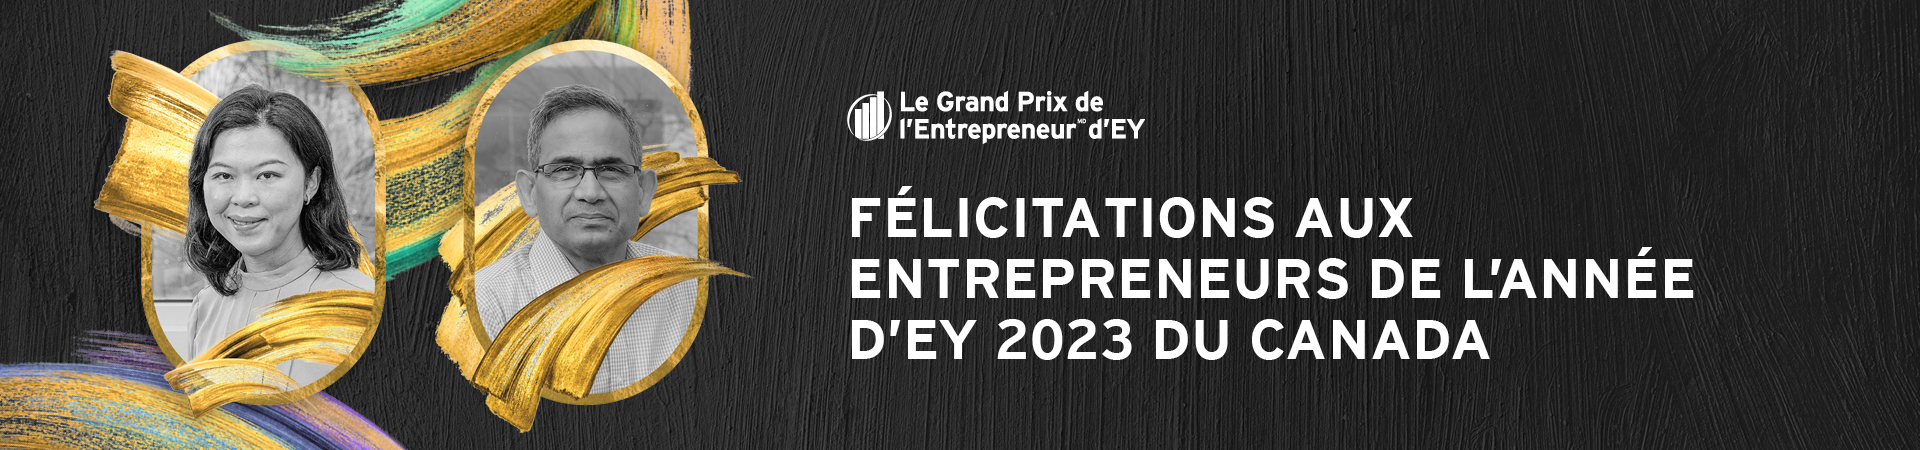 Félicitations aux Entrepreneurs de l’année d’EY 2023 du Canada